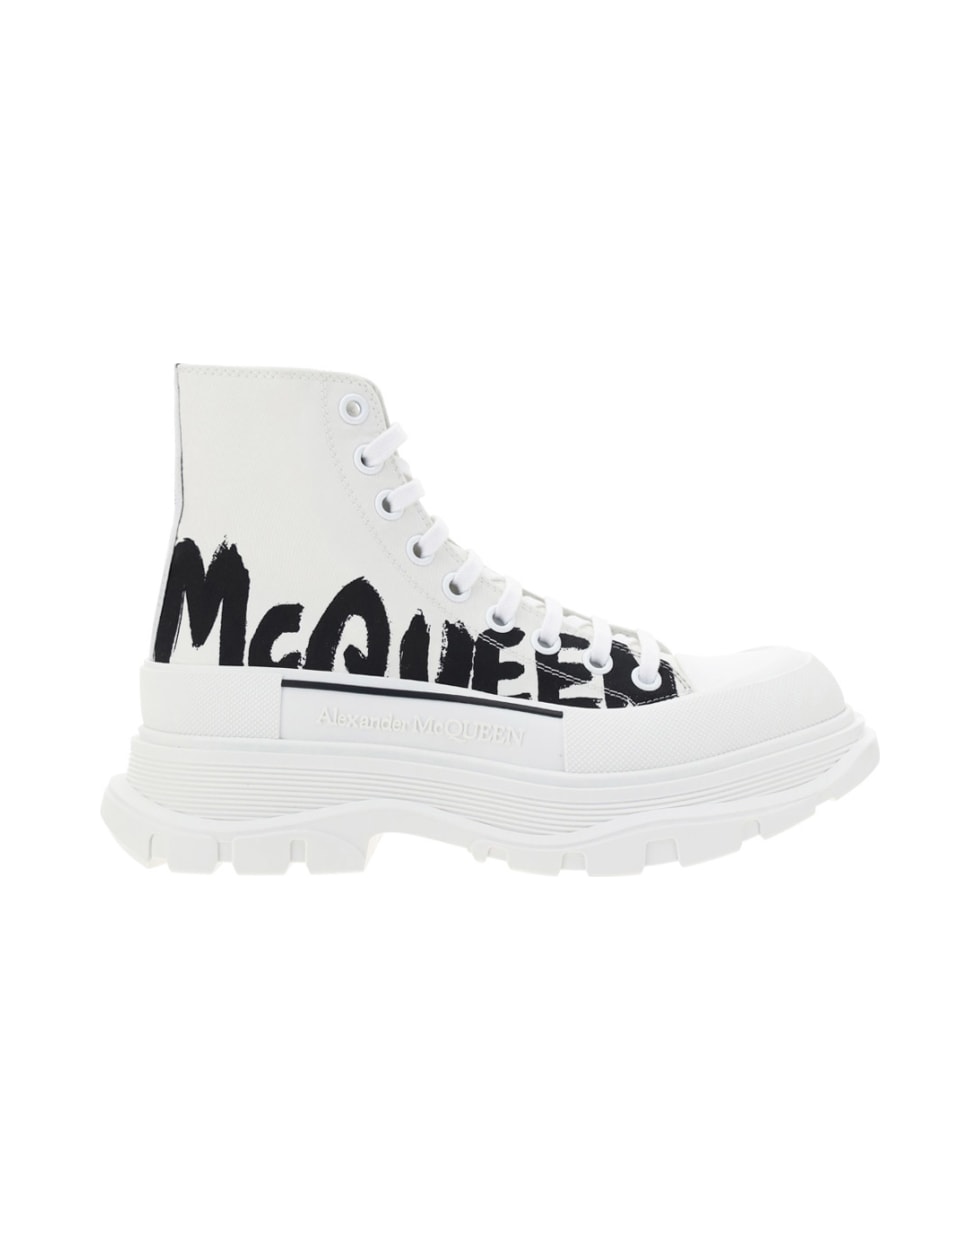 Alexander McQueen Alexander Mc Queen Sneakers - Wh/of.wh/blk/whi/blk